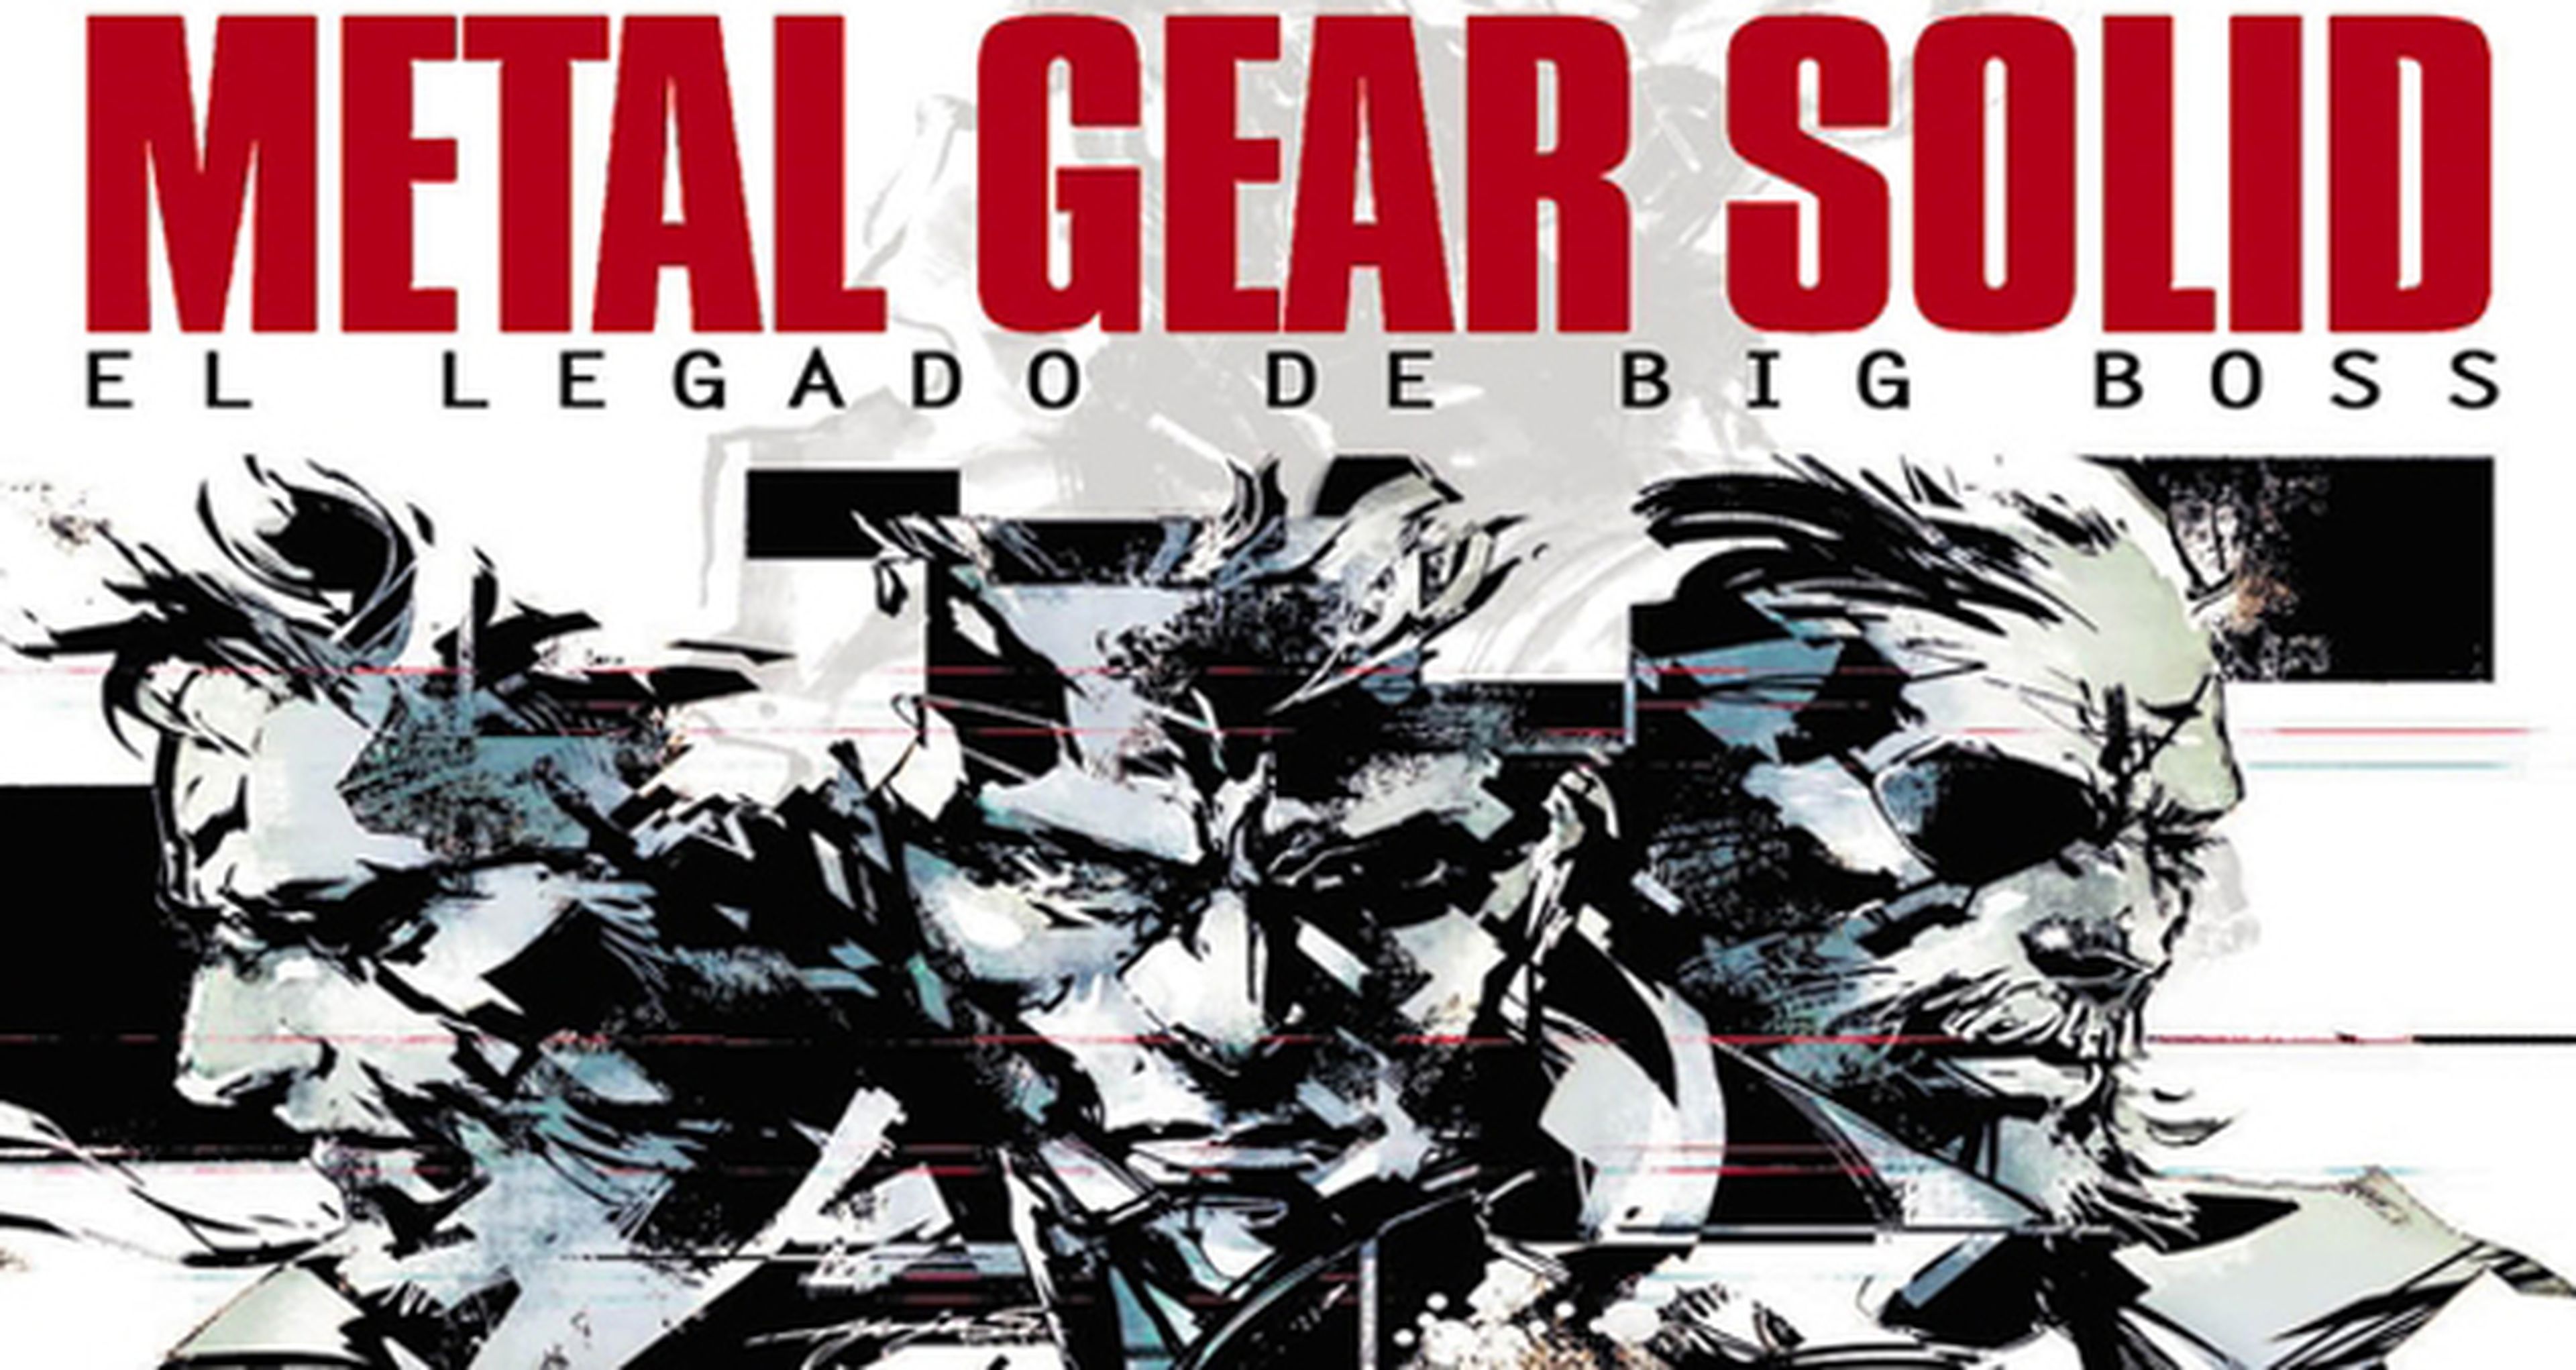 El legado de Big Boss, un nuevo libro sobre Metal Gear Solid